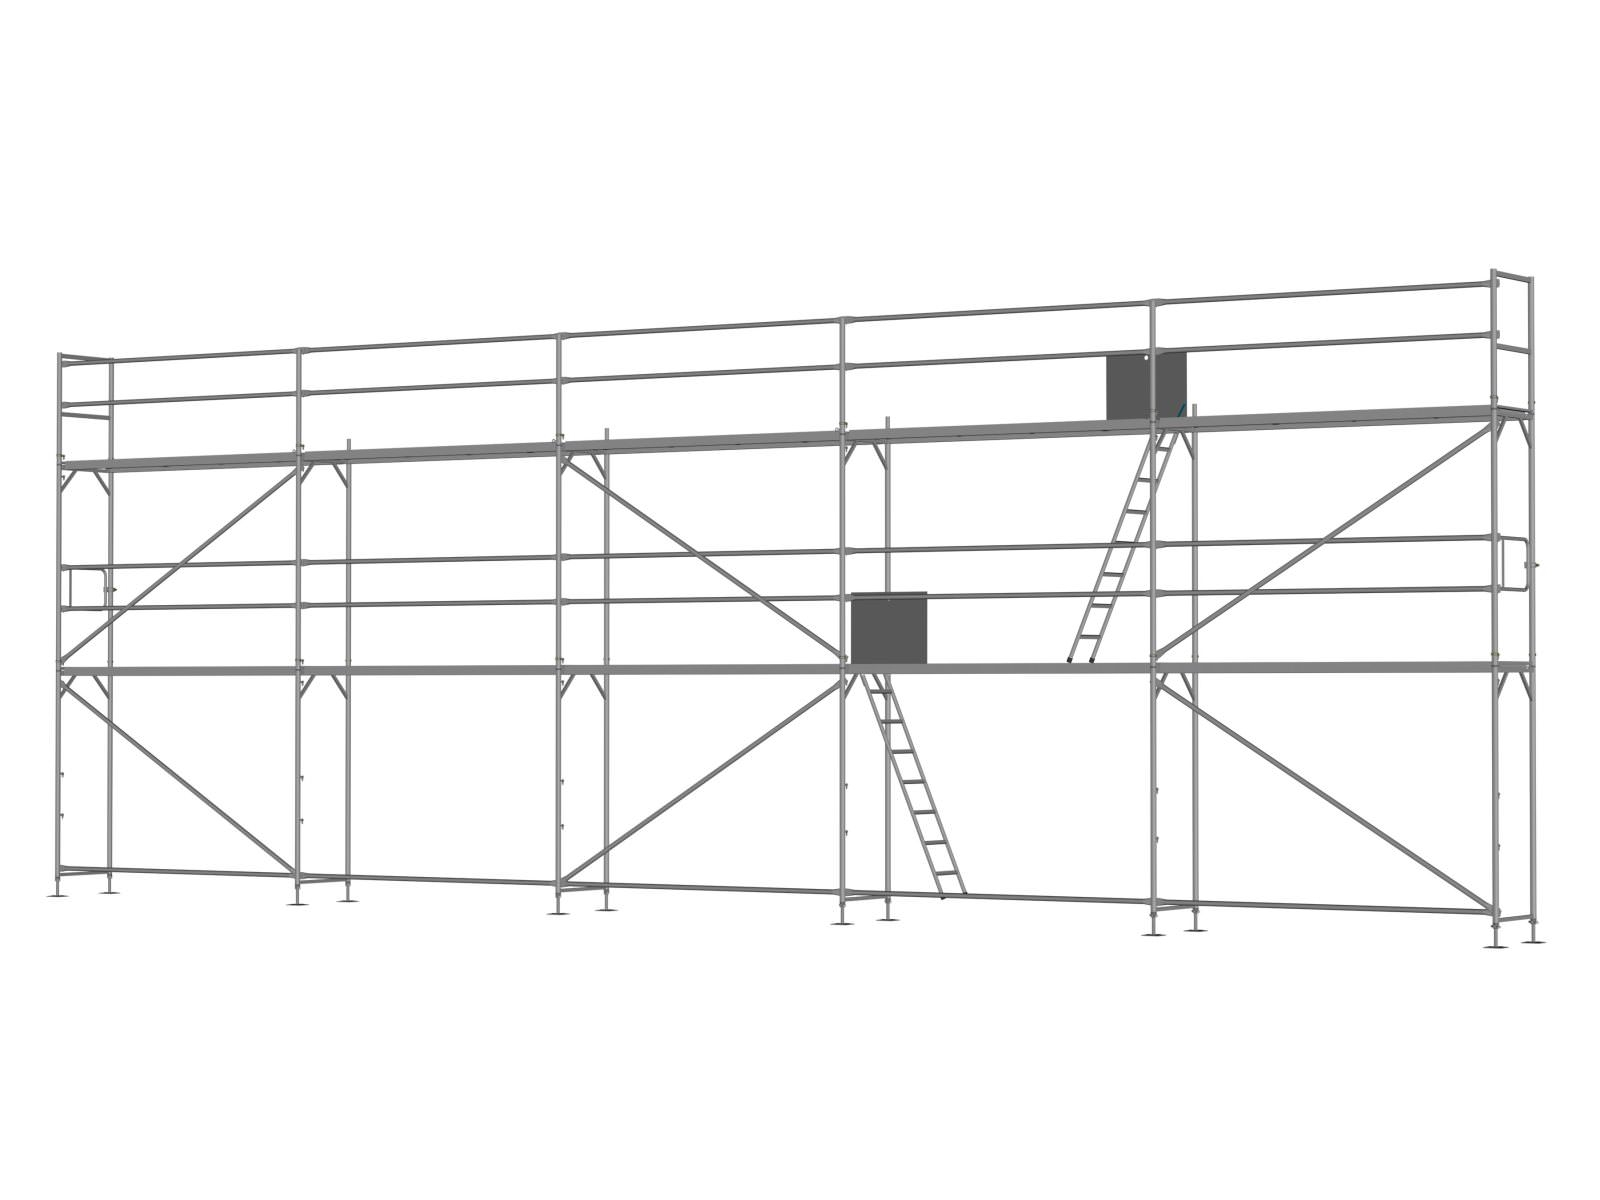 Stahl Traufseitengerüst 90 qm - 3,0 m Felder - 15 m lang - 6 m Arbeitshöhe - Basis-Gerüst inkl. Aufstieg & Befestigung